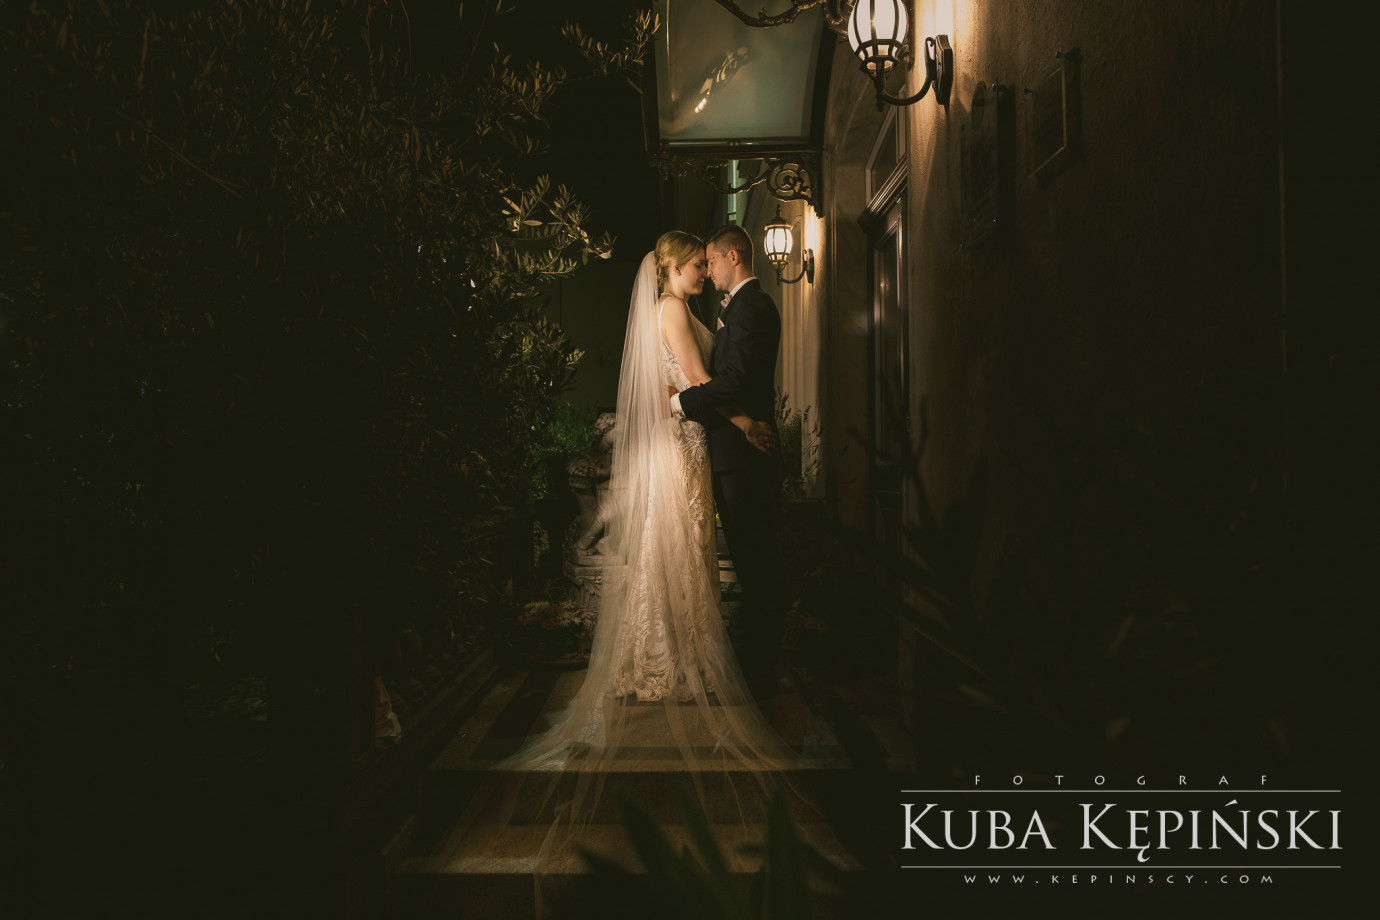 fotograf poznan kuba-kepinski portfolio zdjecia slubne inspiracje wesele plener slubny sesja slubna